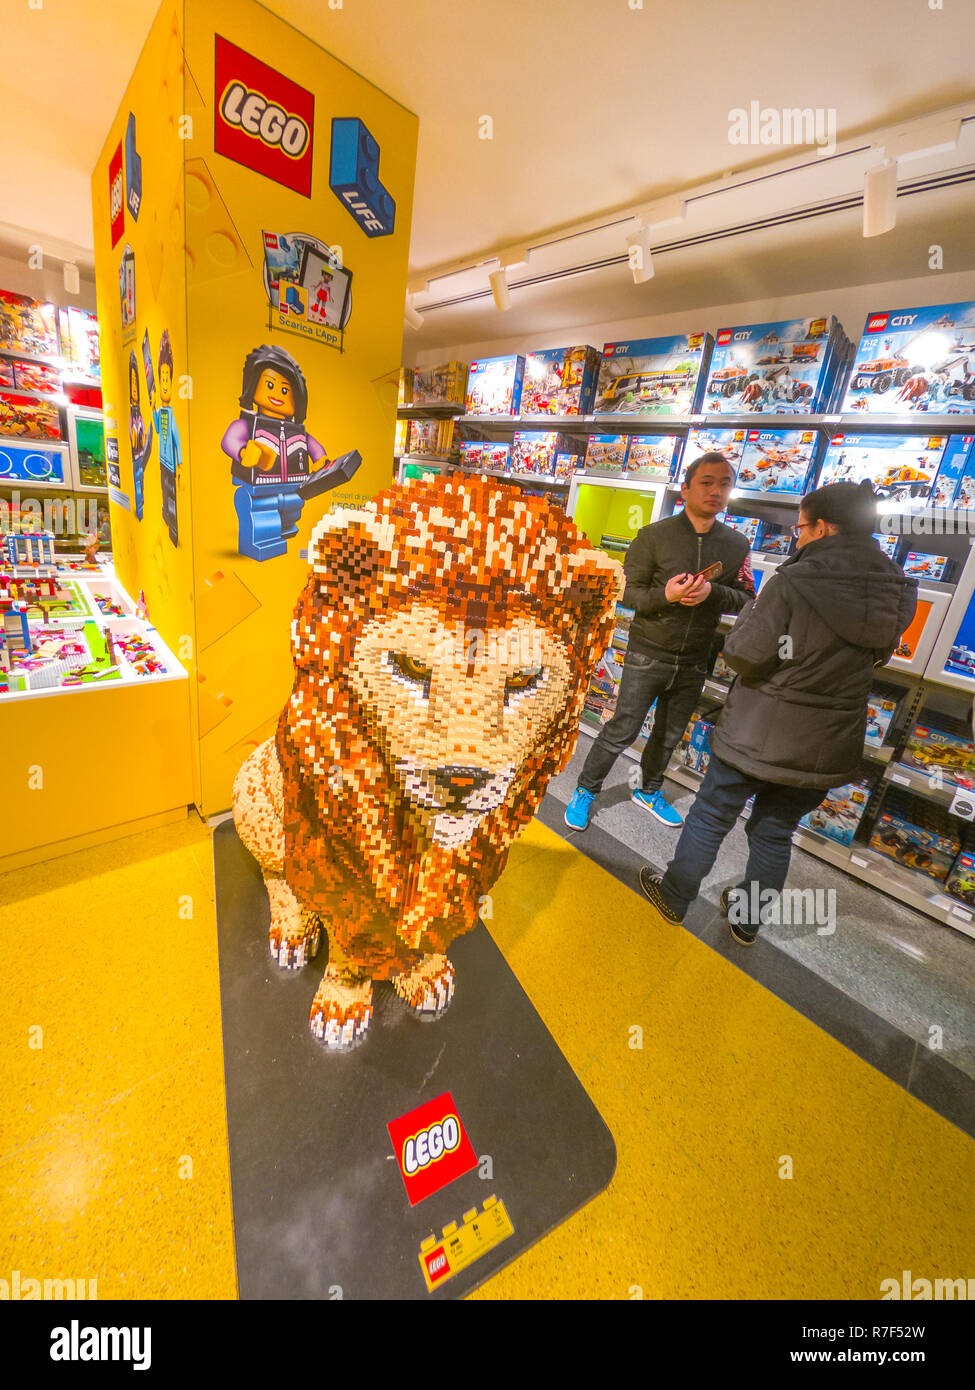 Bolonia, Italia - Diciembre 6, 2018: El Rey León estatua de Lego en  posición vertical en la famosa tienda de juguetes ladrillos LEGO de  Bolonia. Situado en la calle Via Indipendenza, inaugurado